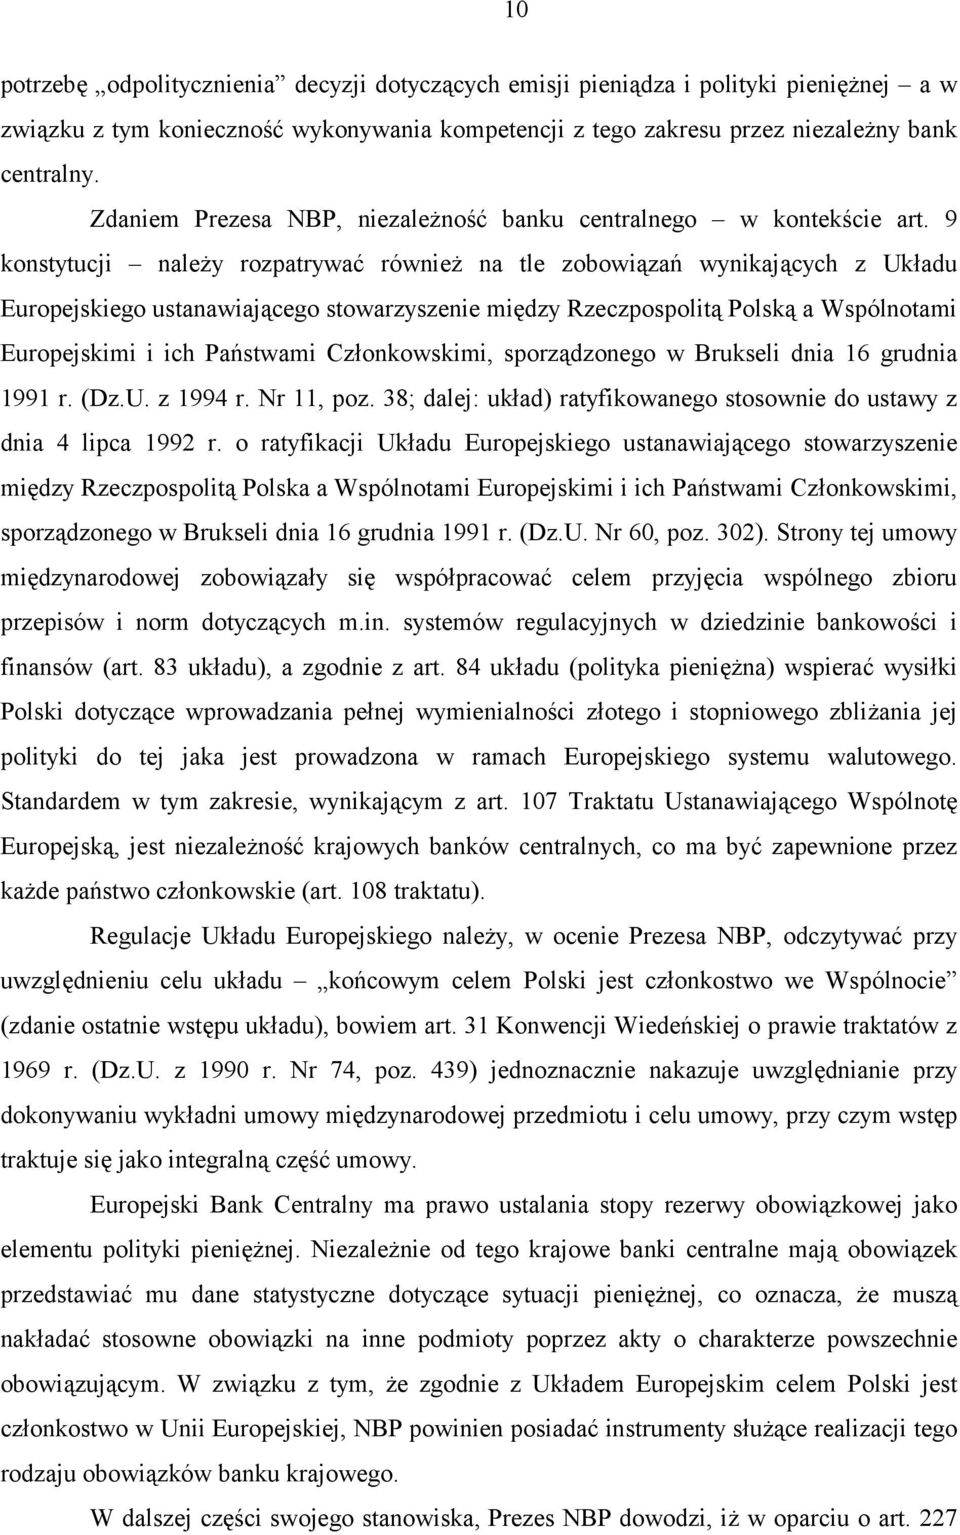 9 konstytucji należy rozpatrywać również na tle zobowiązań wynikających z Układu Europejskiego ustanawiającego stowarzyszenie między Rzeczpospolitą Polską a Wspólnotami Europejskimi i ich Państwami